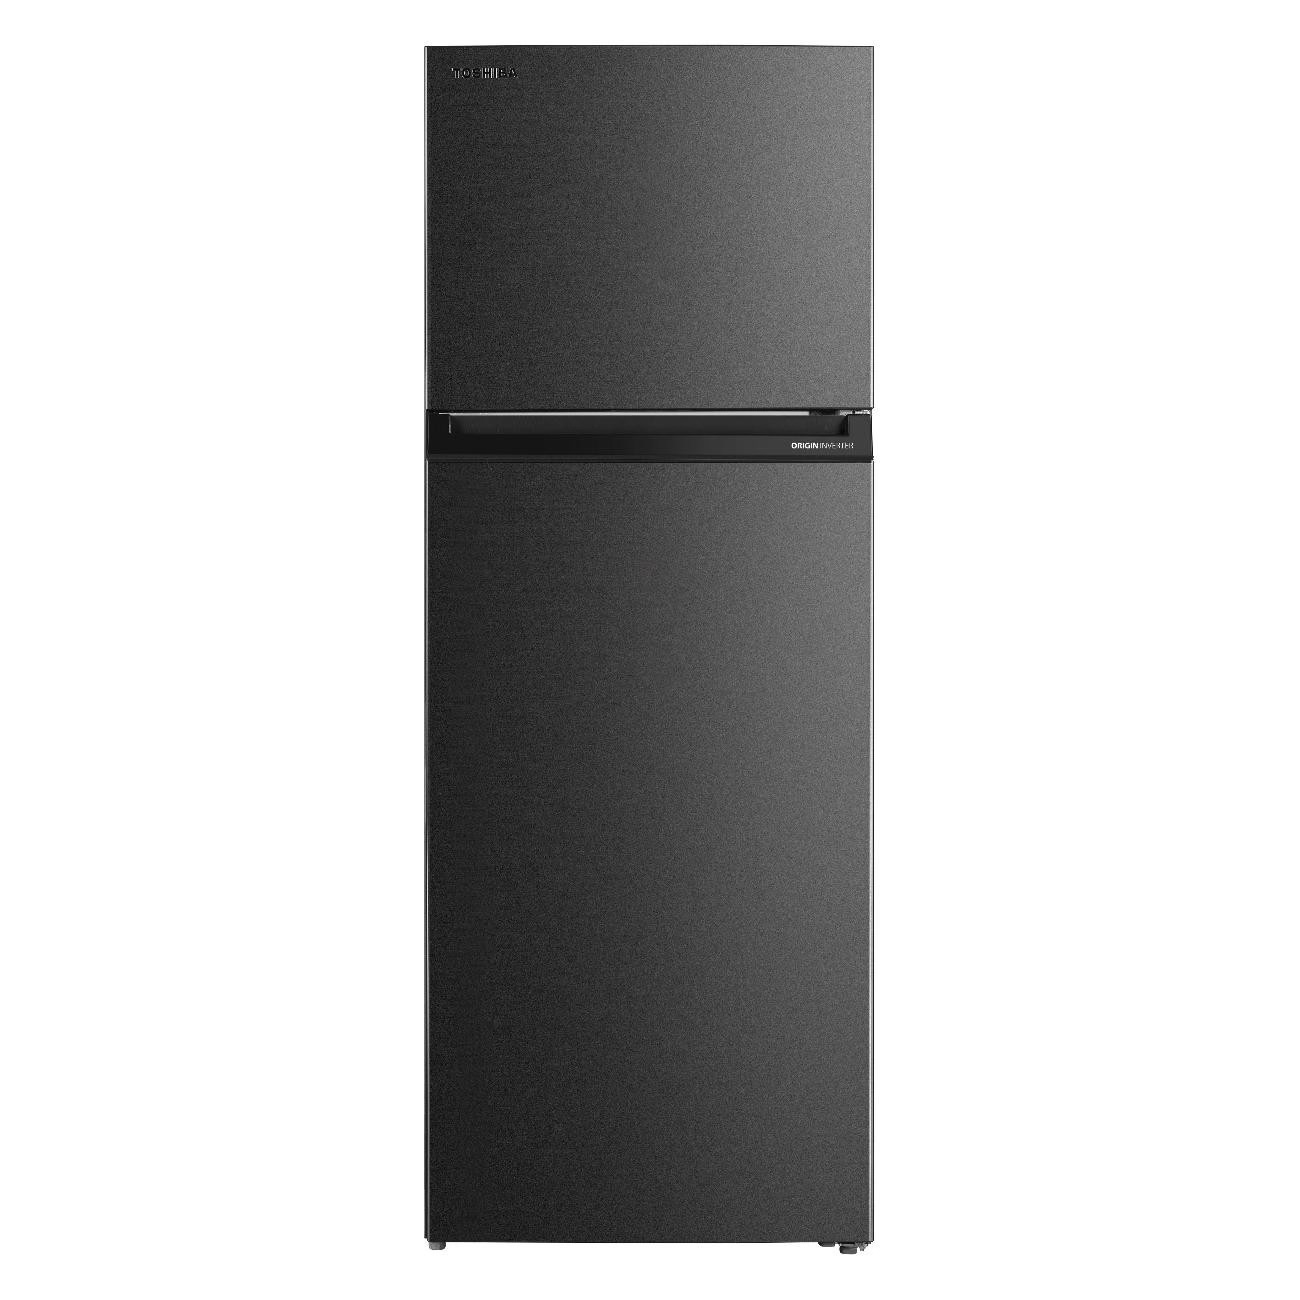 Холодильник Toshiba GR-RT624WE-PMJ(06) серый холодильник toshiba gr rt559we pmj 06 серый